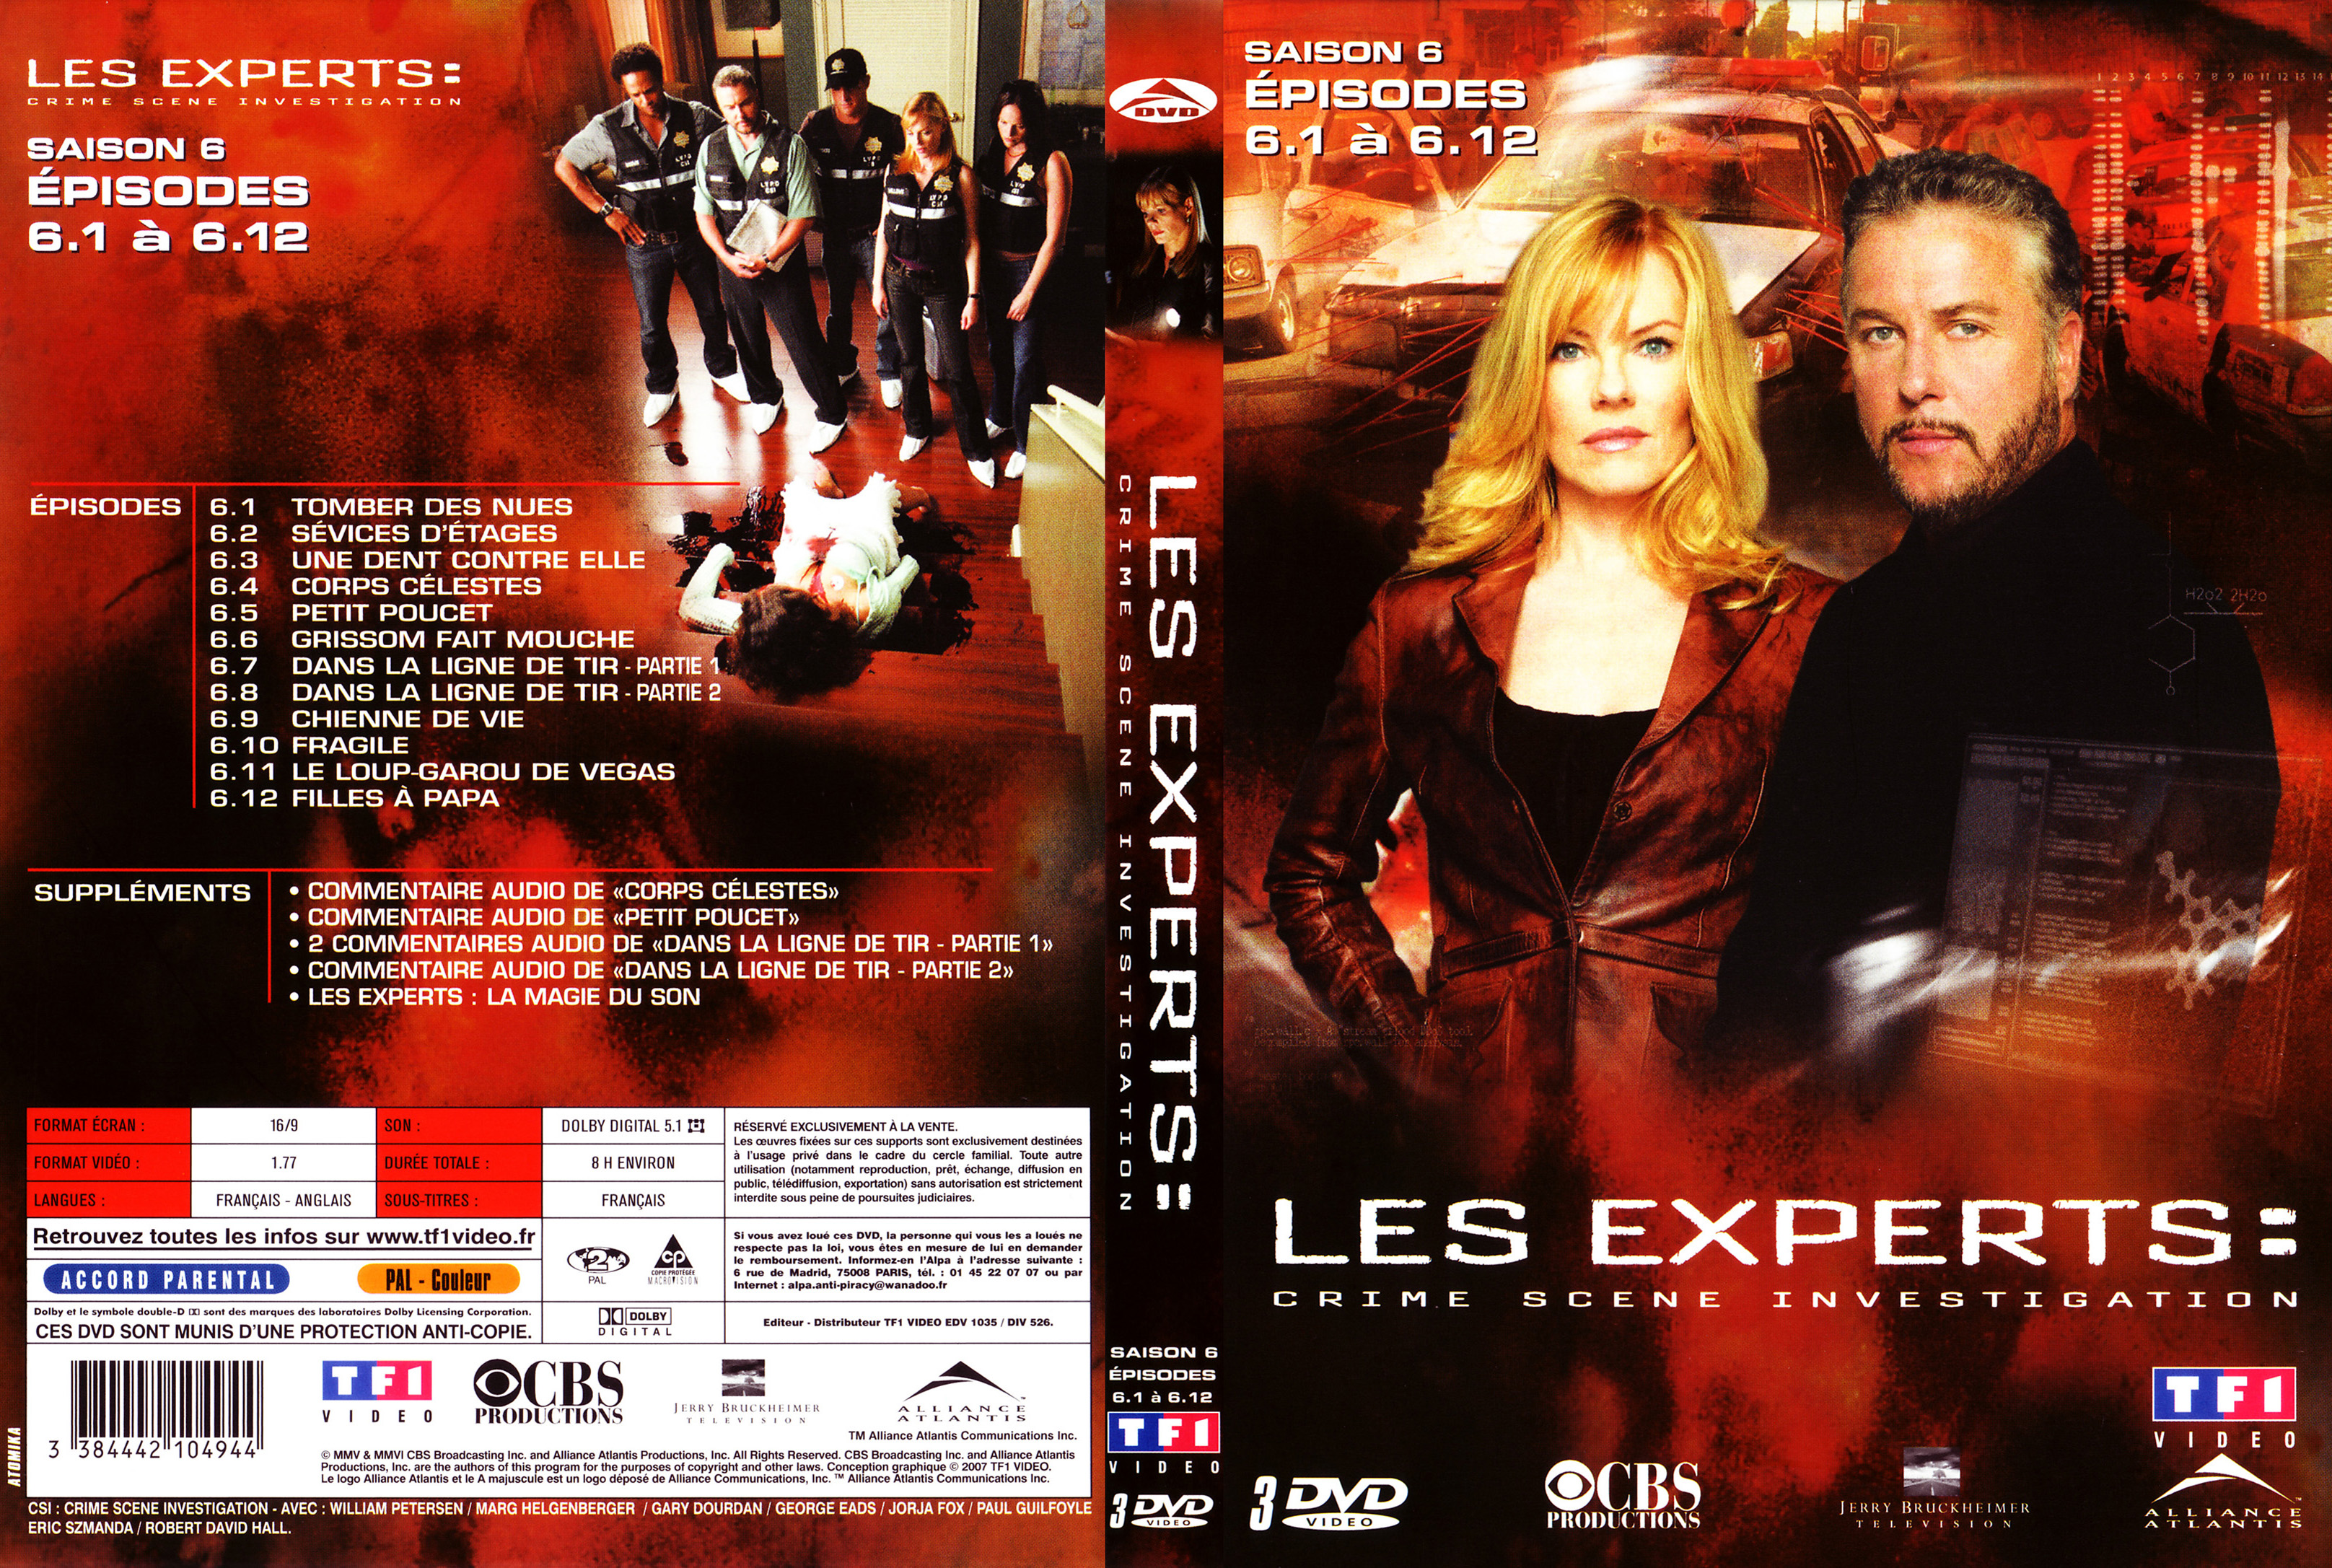 Jaquette DVD Les experts saison 6 vol 01 COFFRET